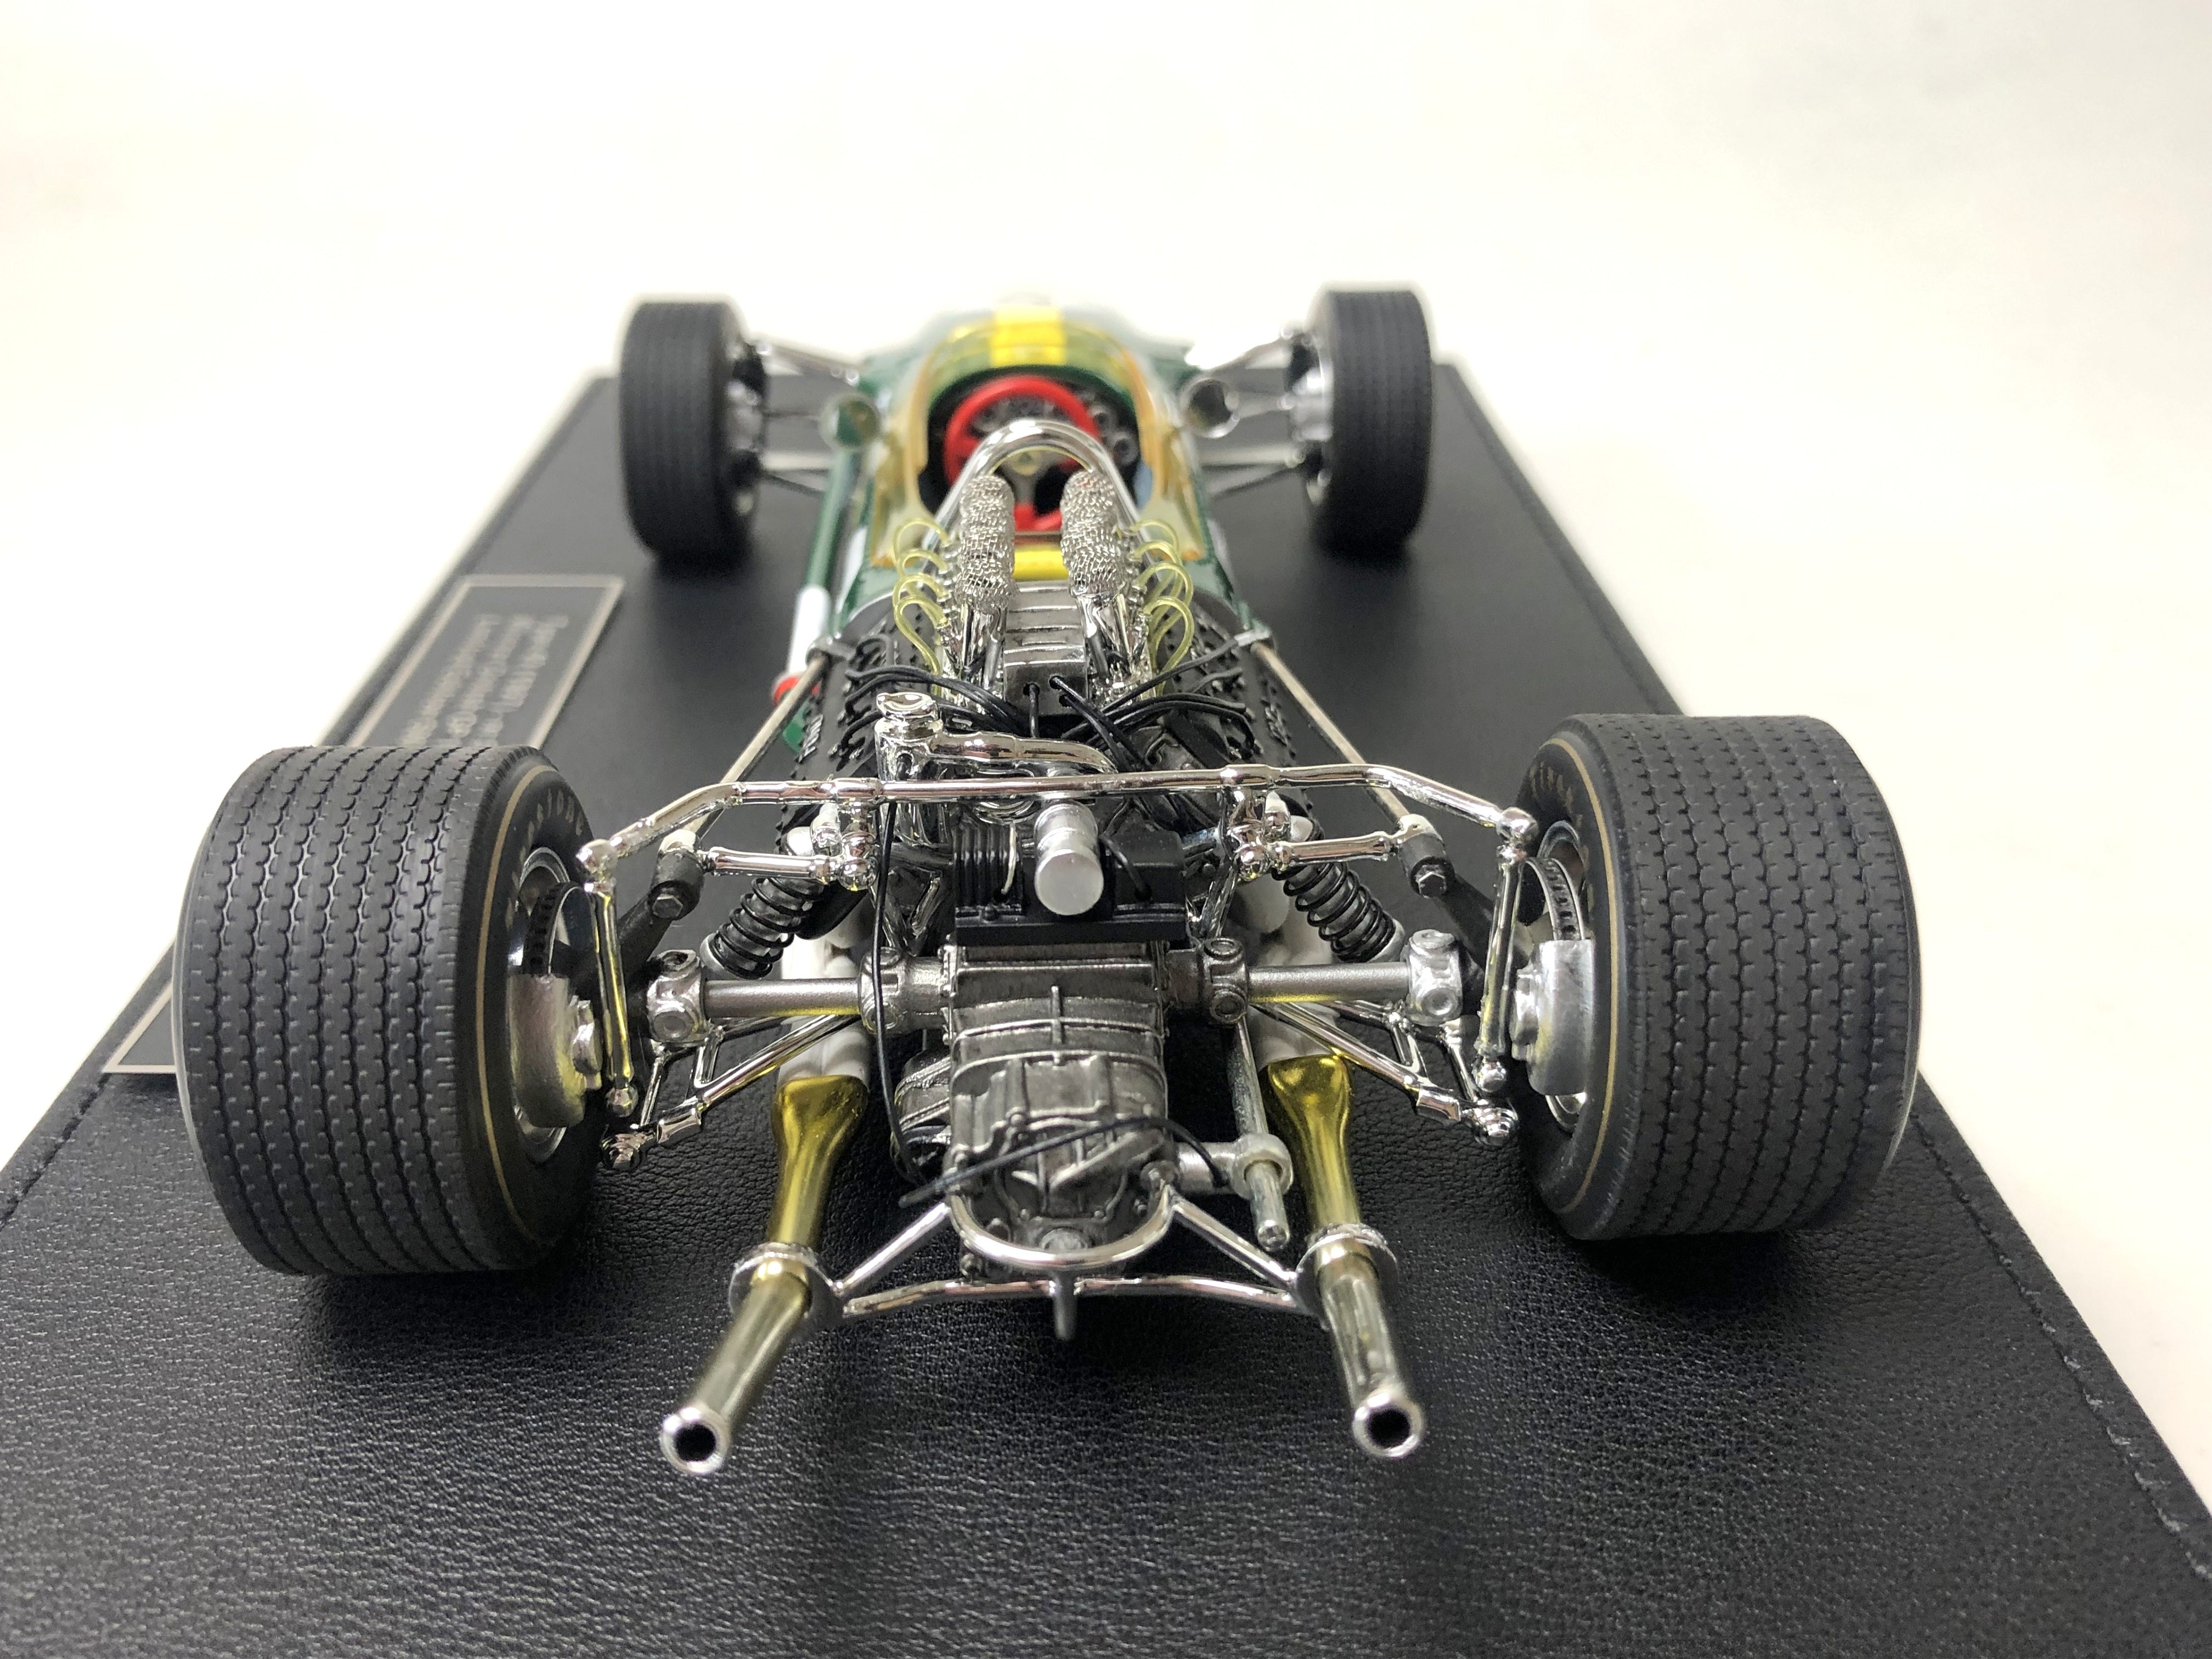 Escala 1:18 1965 Lotus 33 Jim Clark #5 Ganador del Gran Premio Británico